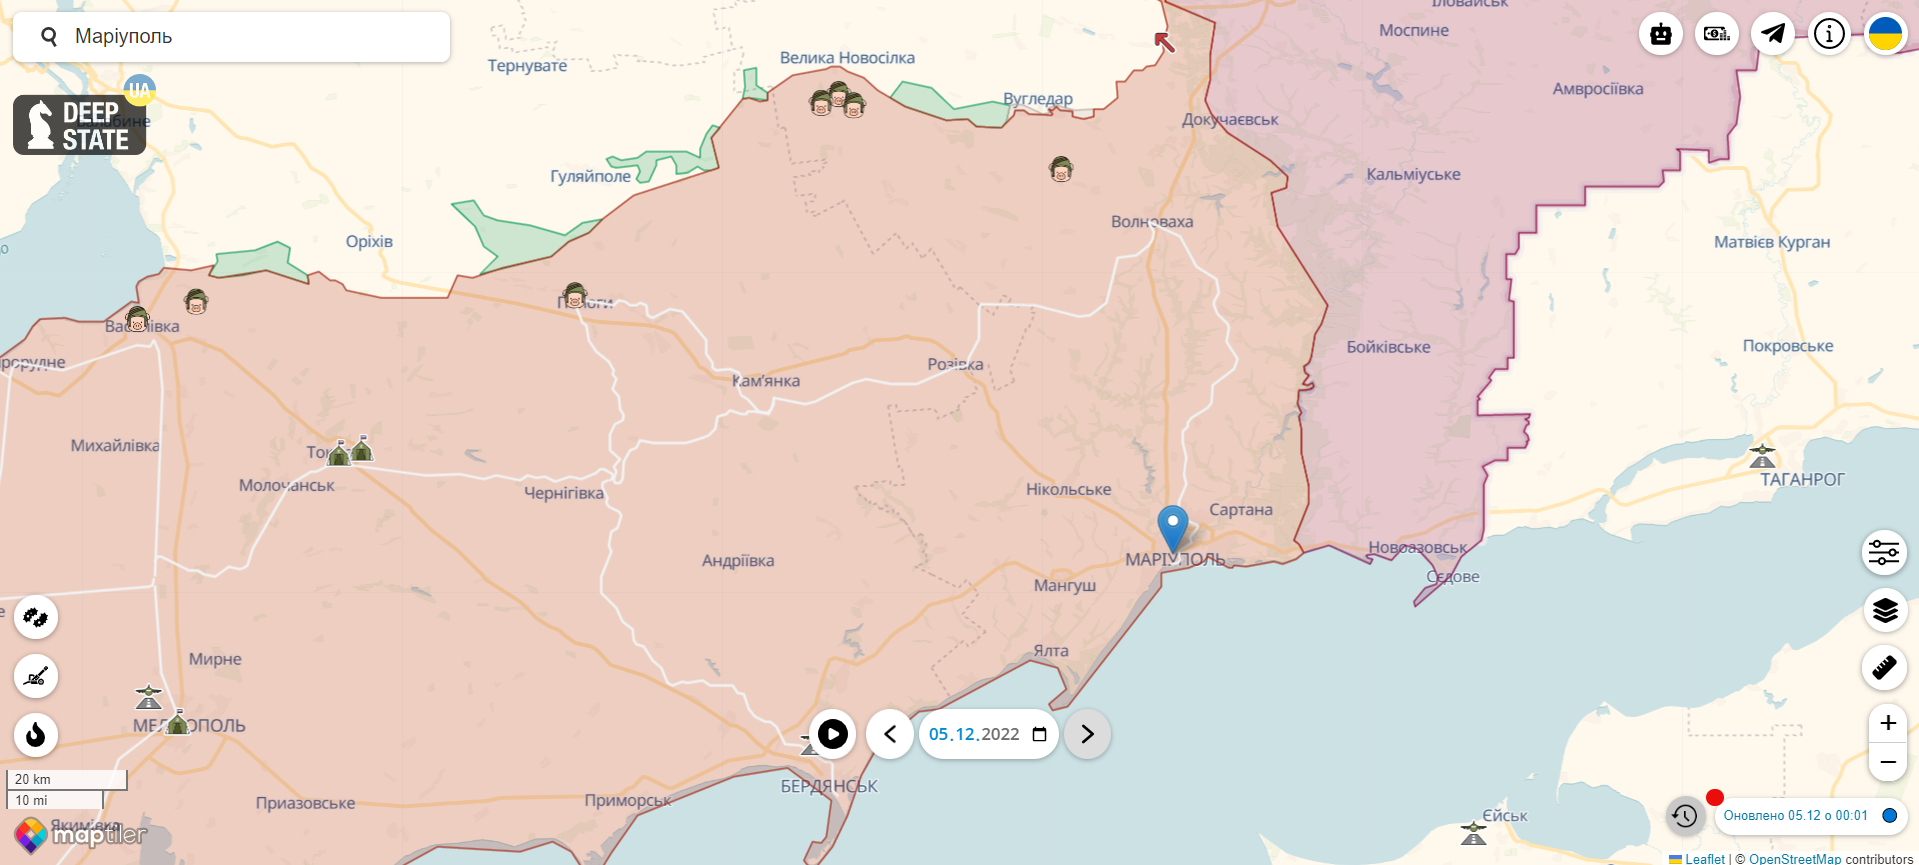 Войска РФ превратили Мариуполь в тыловую военно-логистическую базу, в город завезли "зубы дракона", – Андрющенко